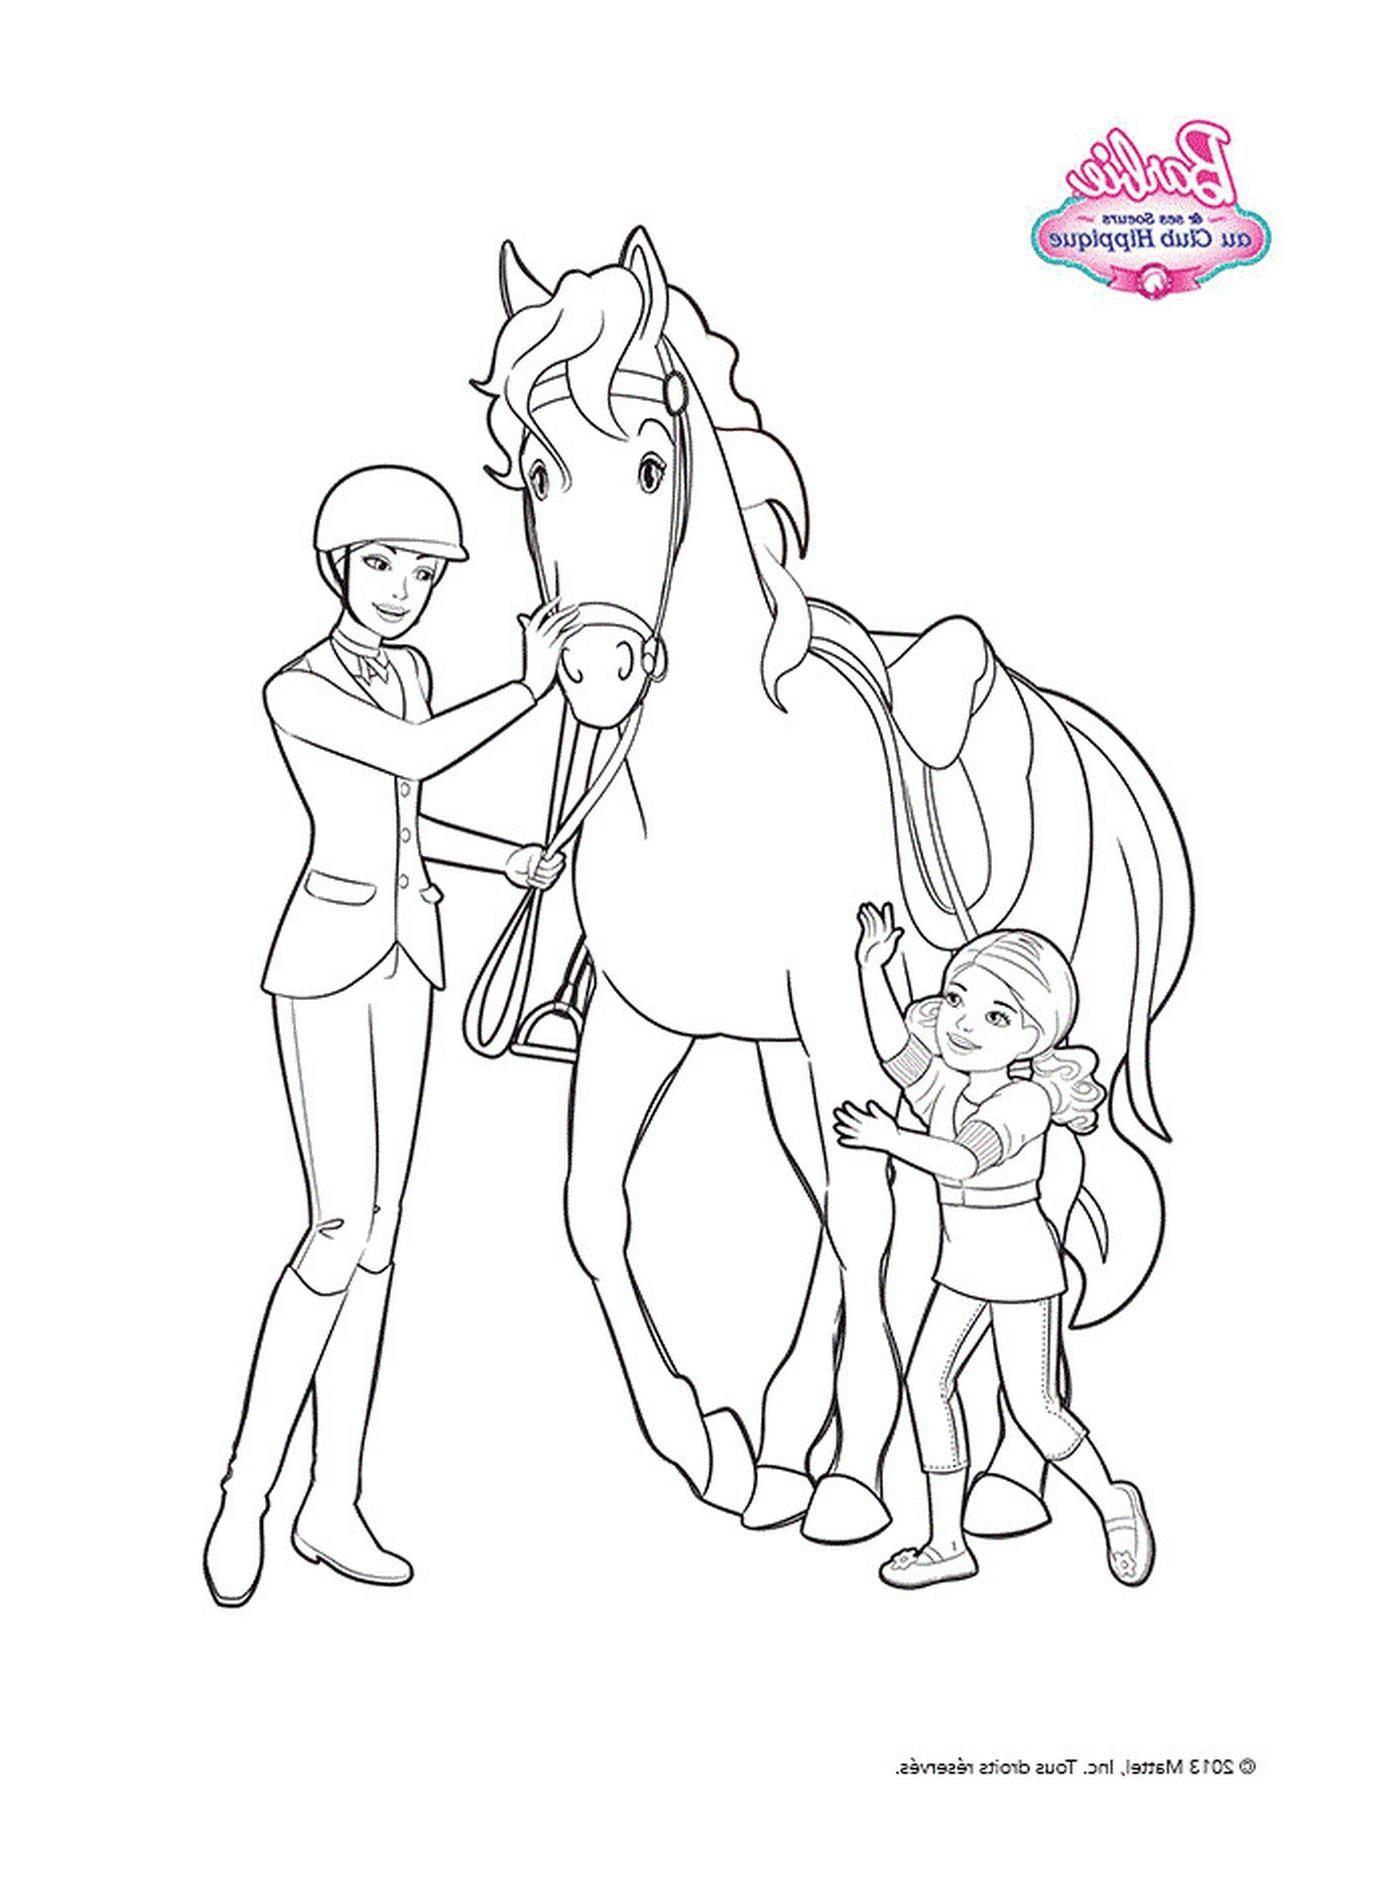  बार्बे और एक छोटी लड़की घोड़े के बगल में खड़े 